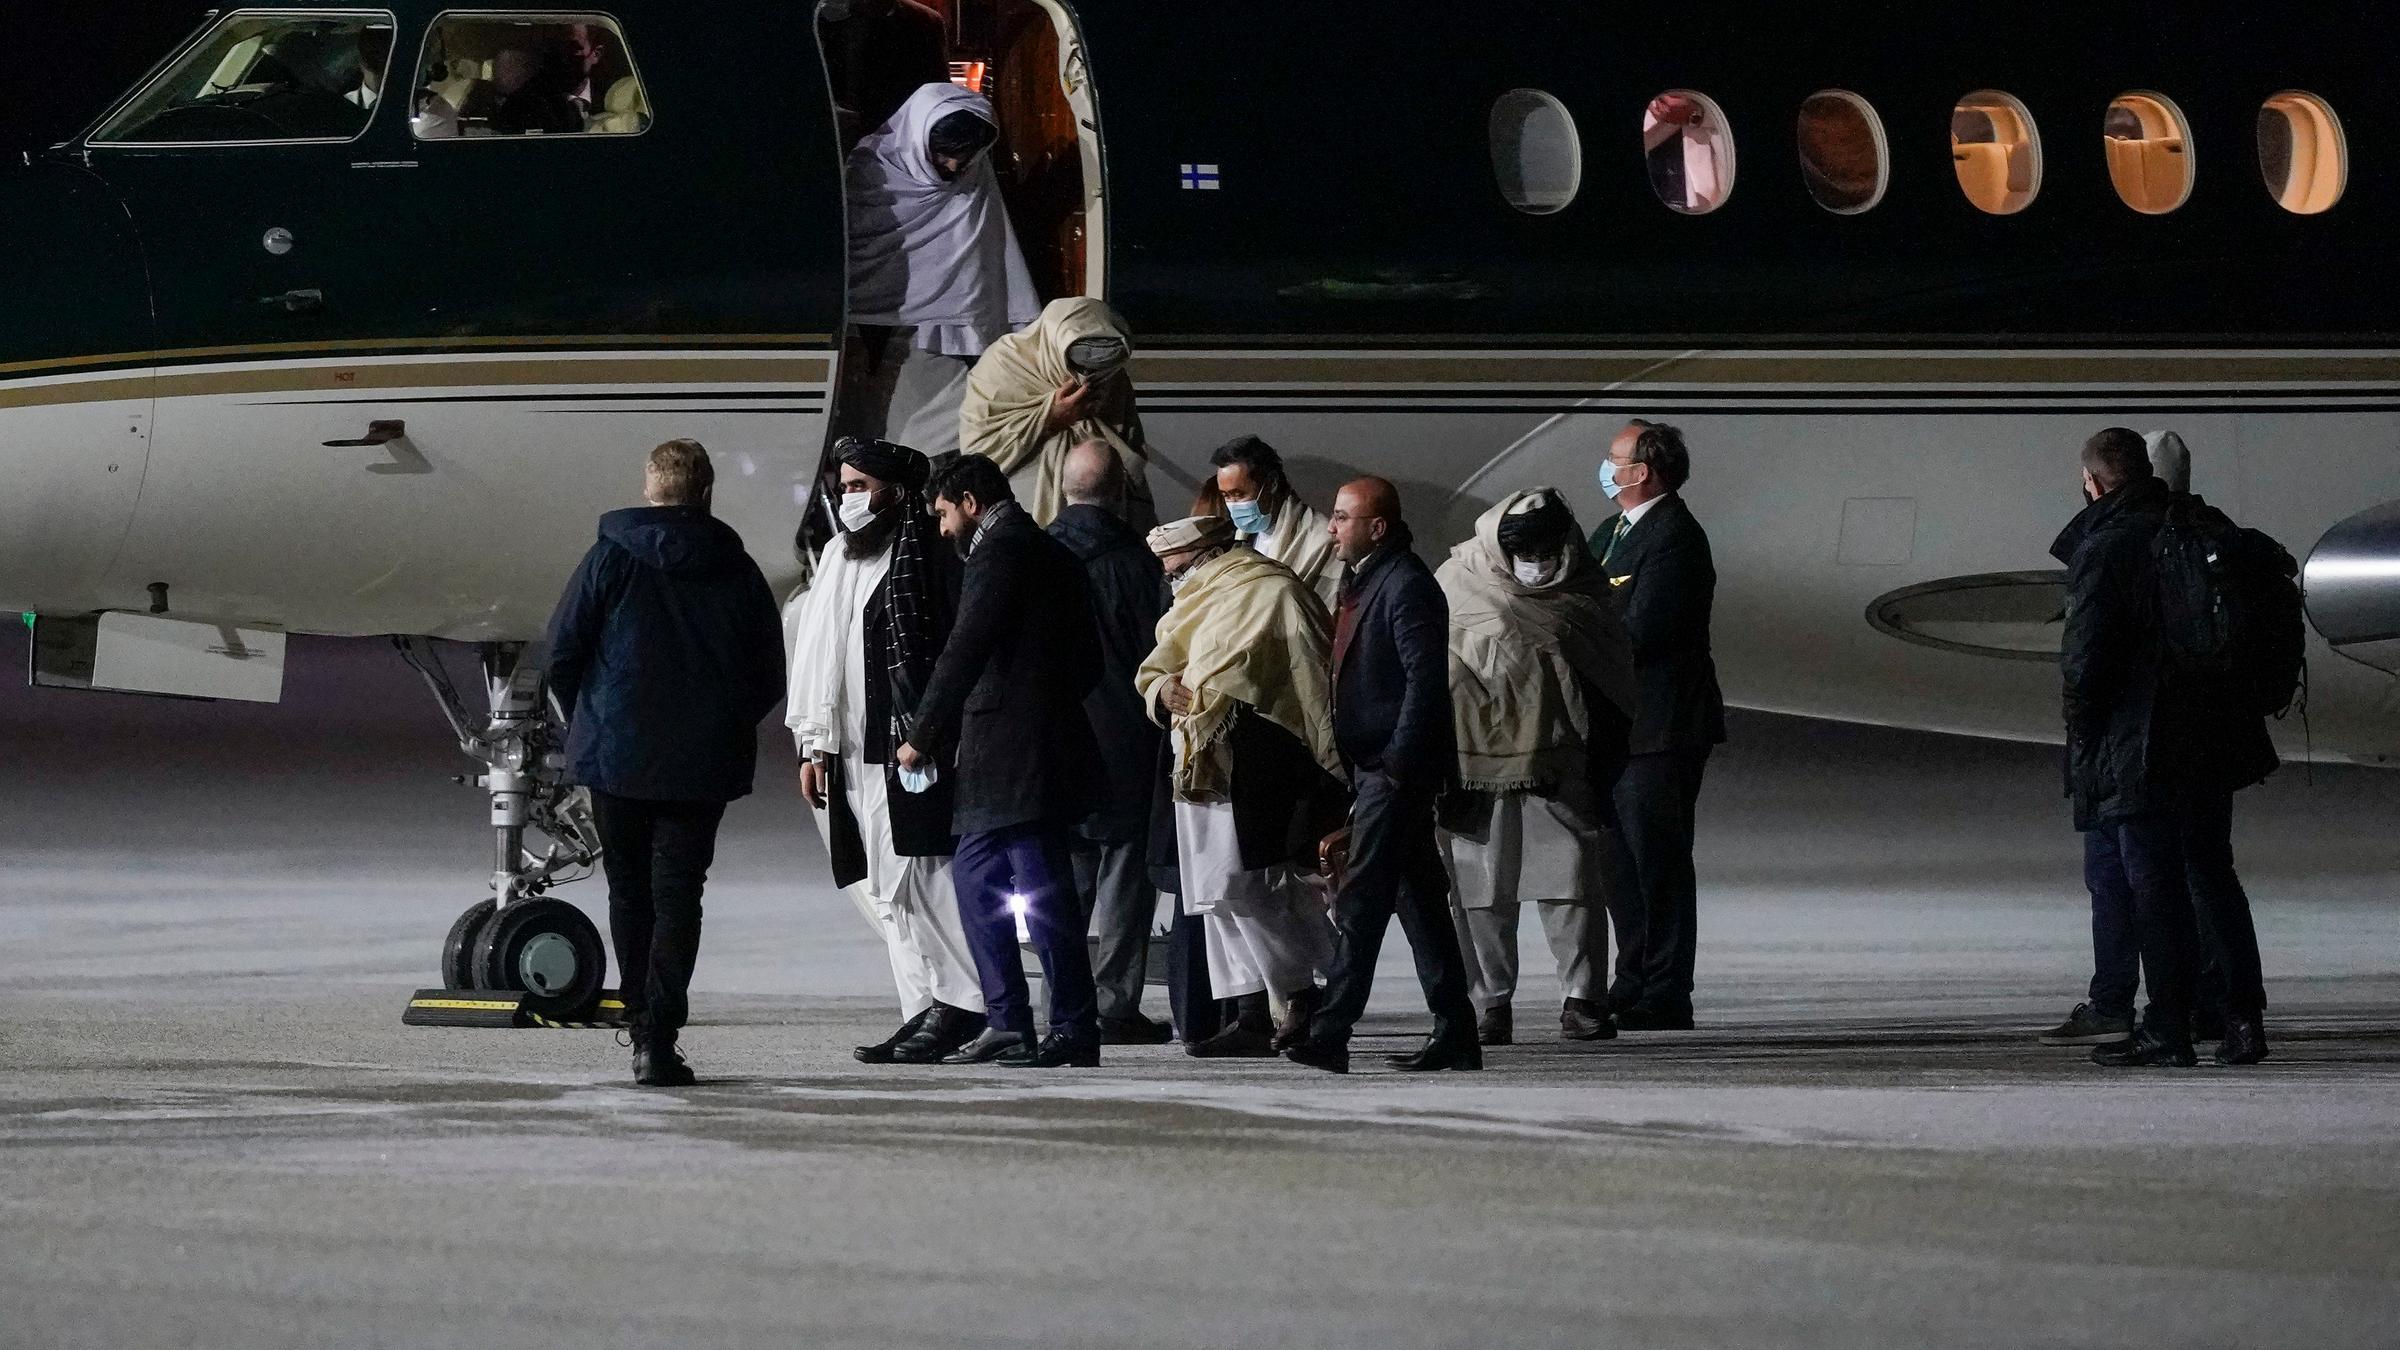 Vertreter der Taliban verlassen nach der Landung am Flughafen Oslo ein ...</p>

                        <a href=